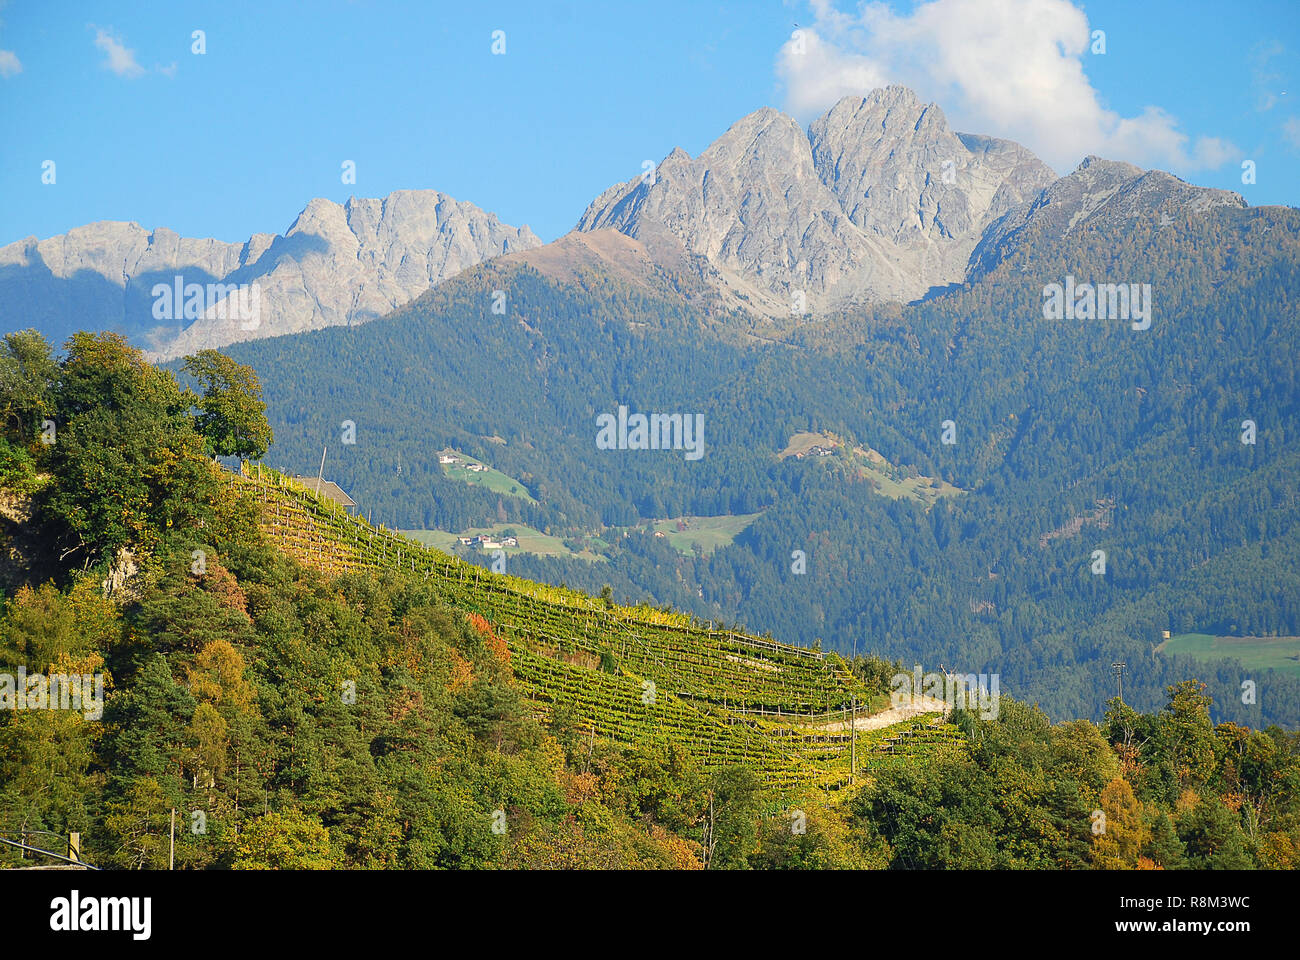 Vue panoramique sur les vallées et les montagnes (Alpes Sarntal) dans les Alpes italiennes (Meran, le Tyrol du Sud, Italie). Ifinger montagne (ital. Picco) Ivigna, 3724m Banque D'Images